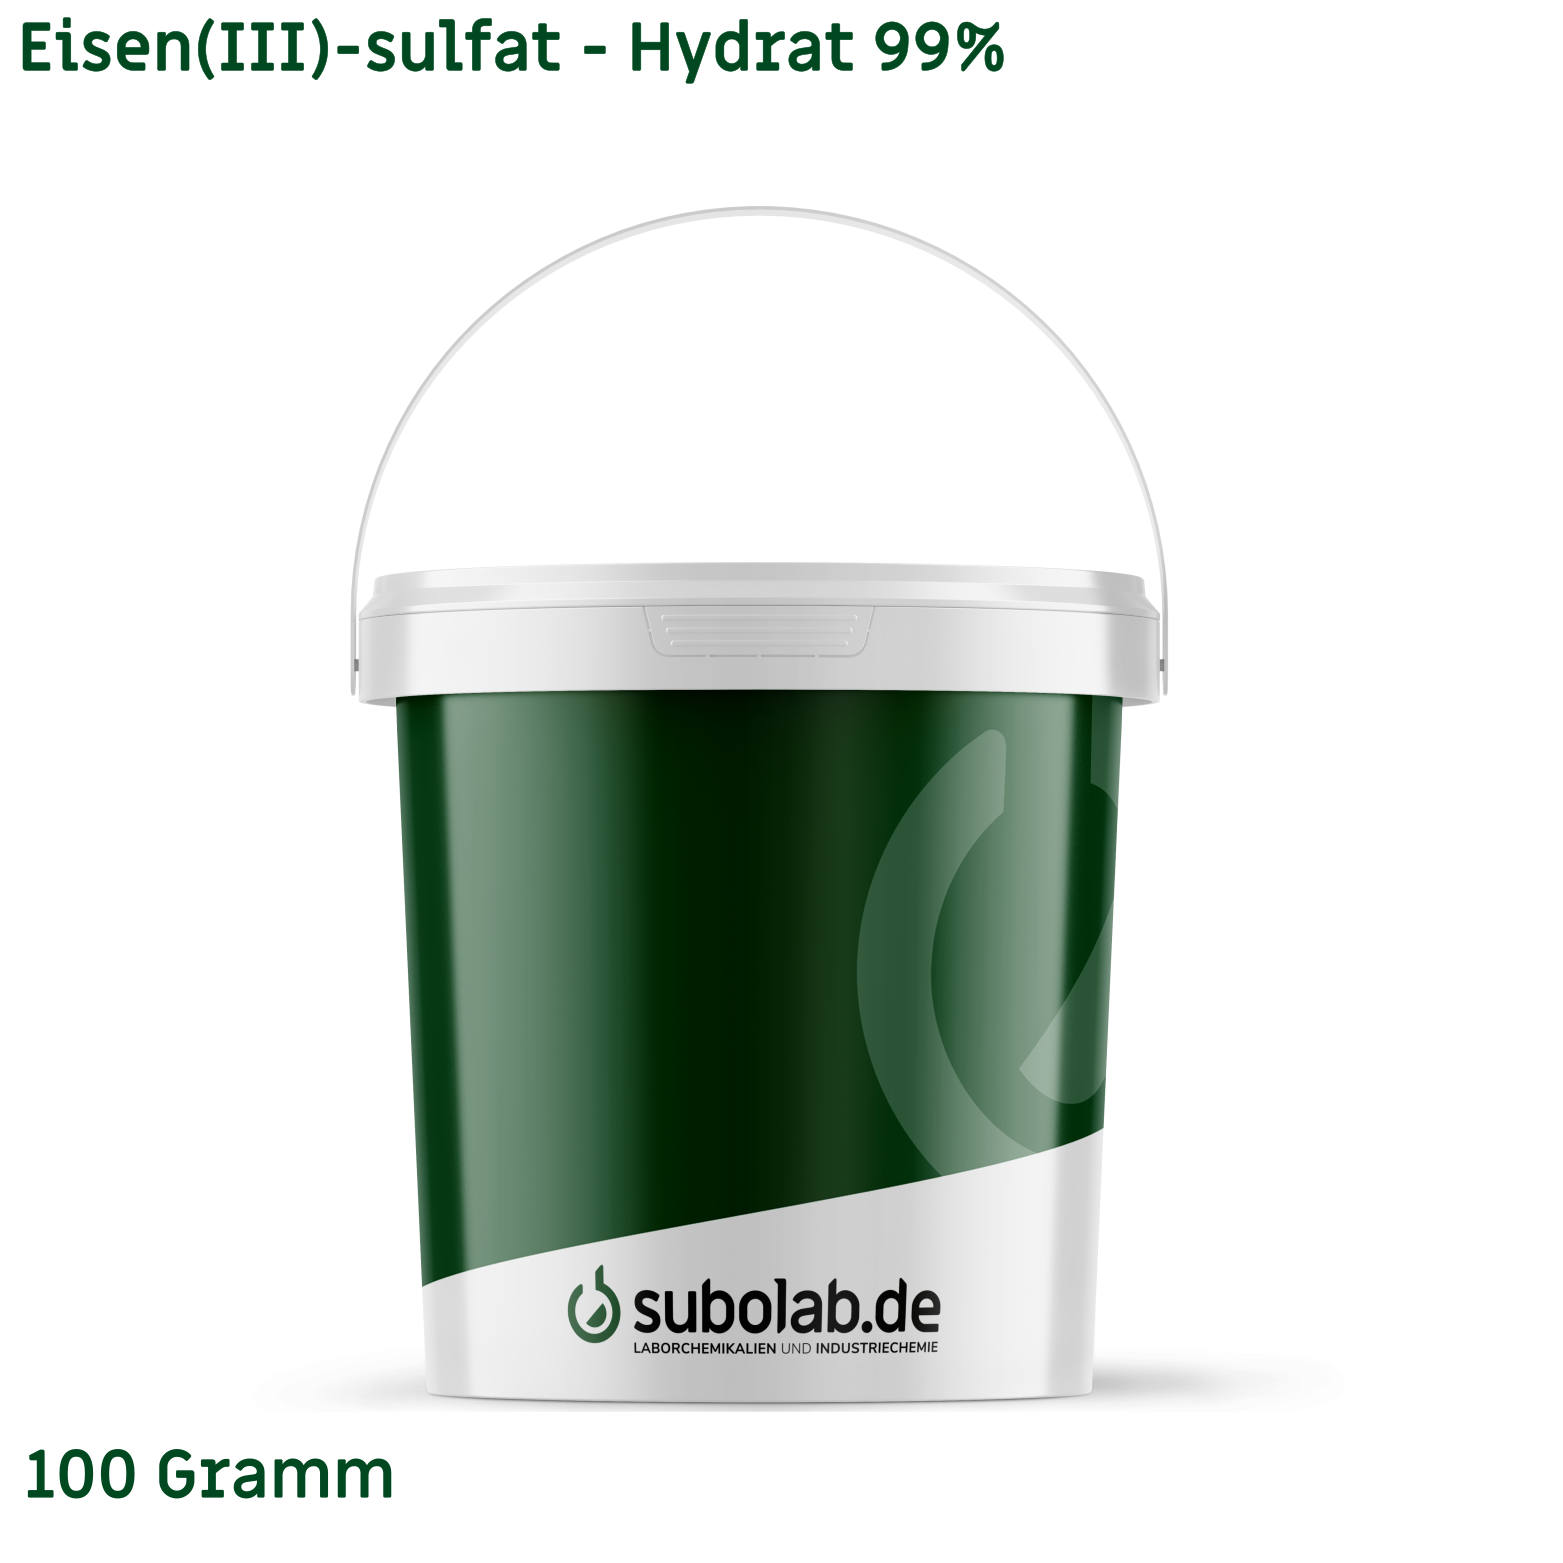 Bild von Eisen(III)-sulfat - Hydrat 99% (100 Gramm)